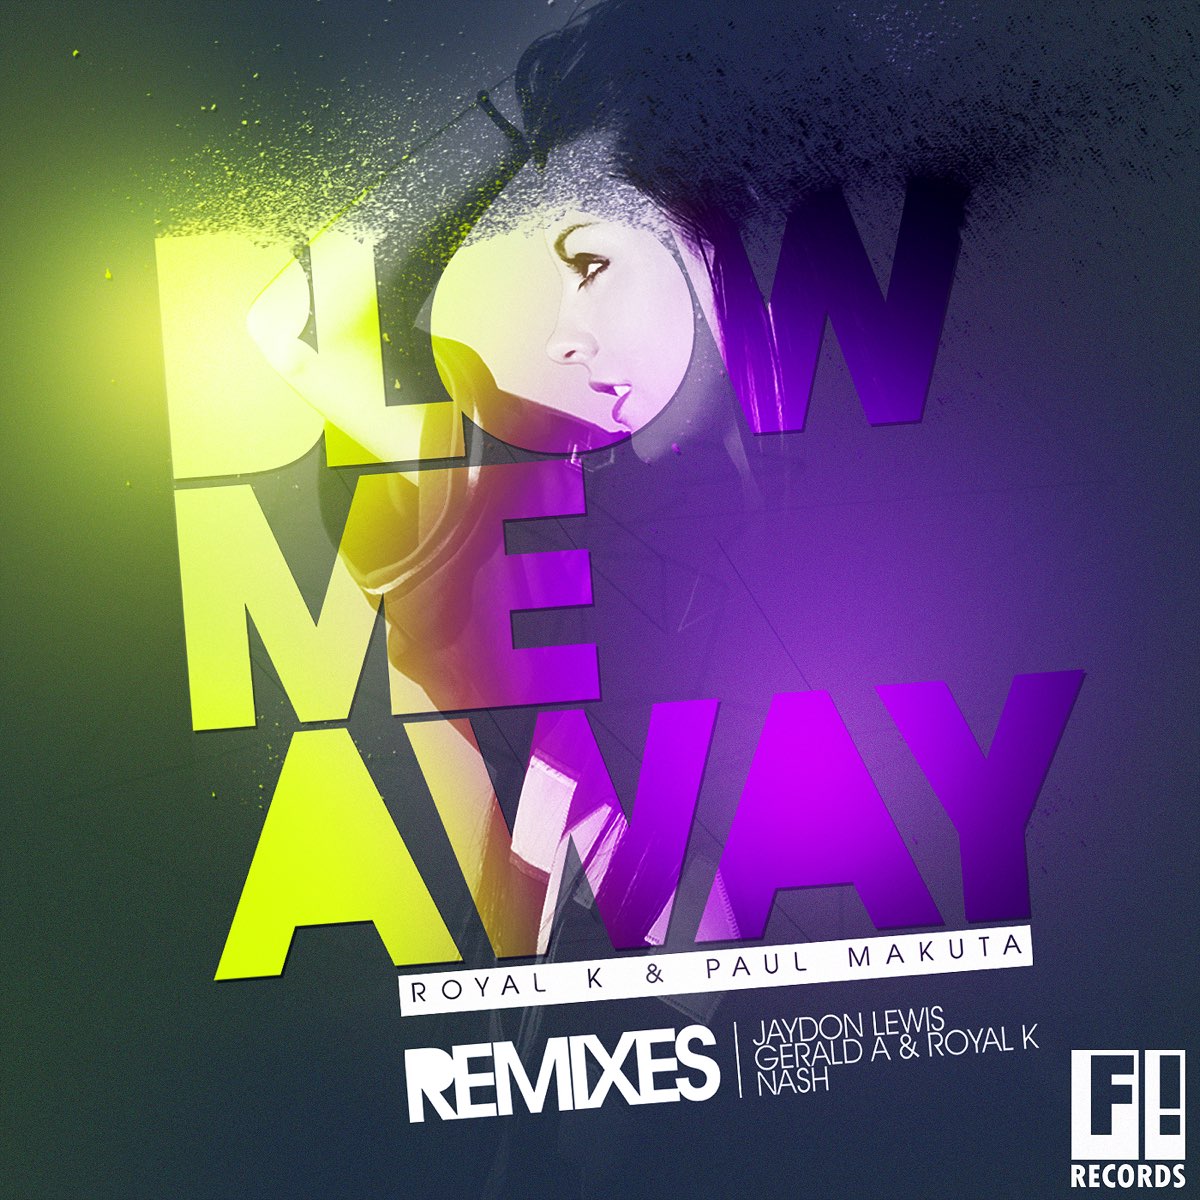 Royalty remix. That blows me away.